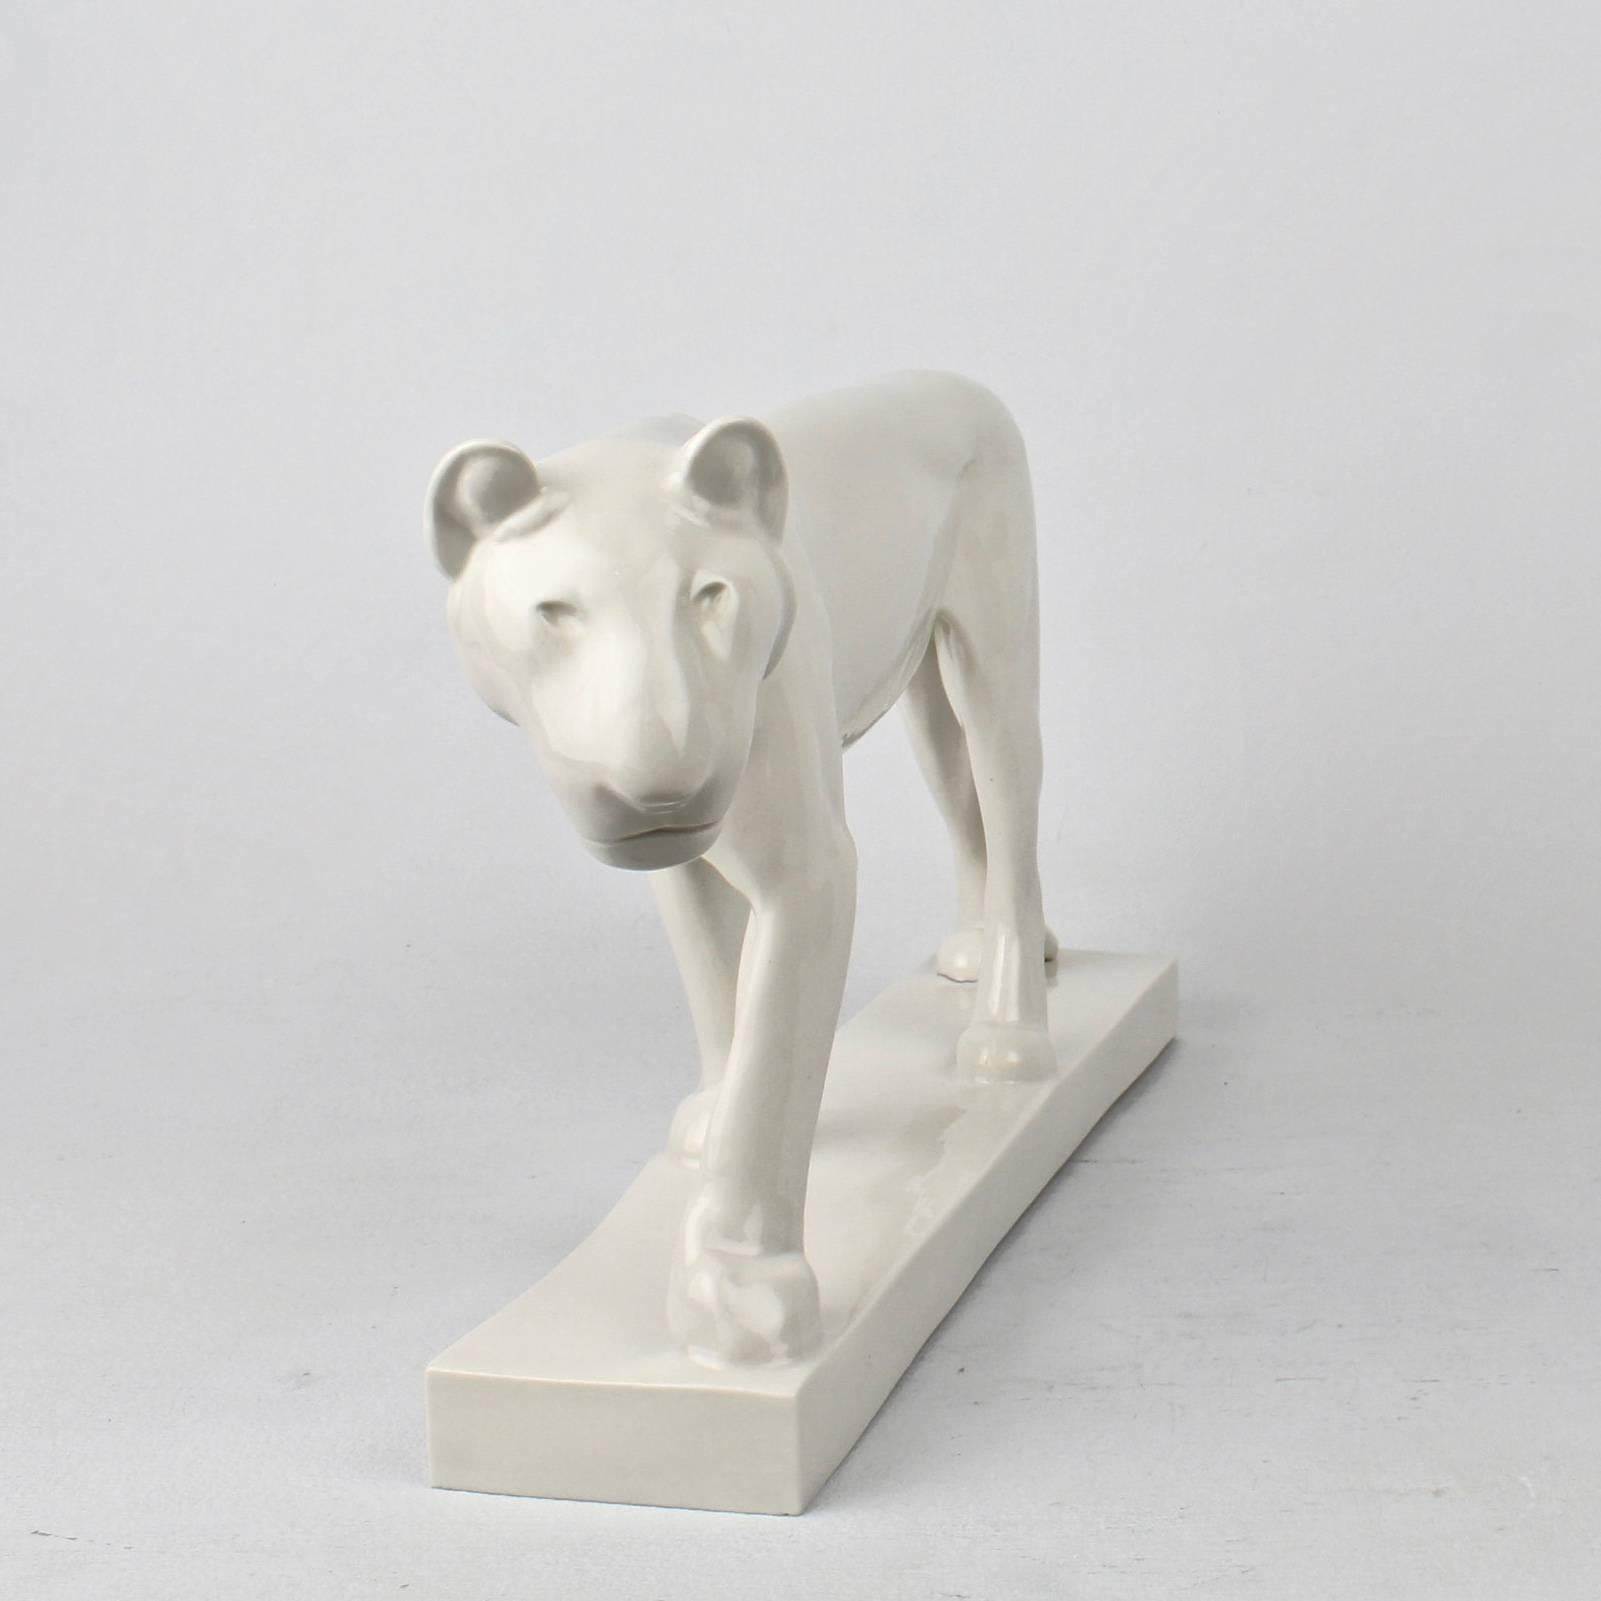 German Jugendstil White Porcelain Lion Figurine by Gerhard Marcks for Schwarzburger